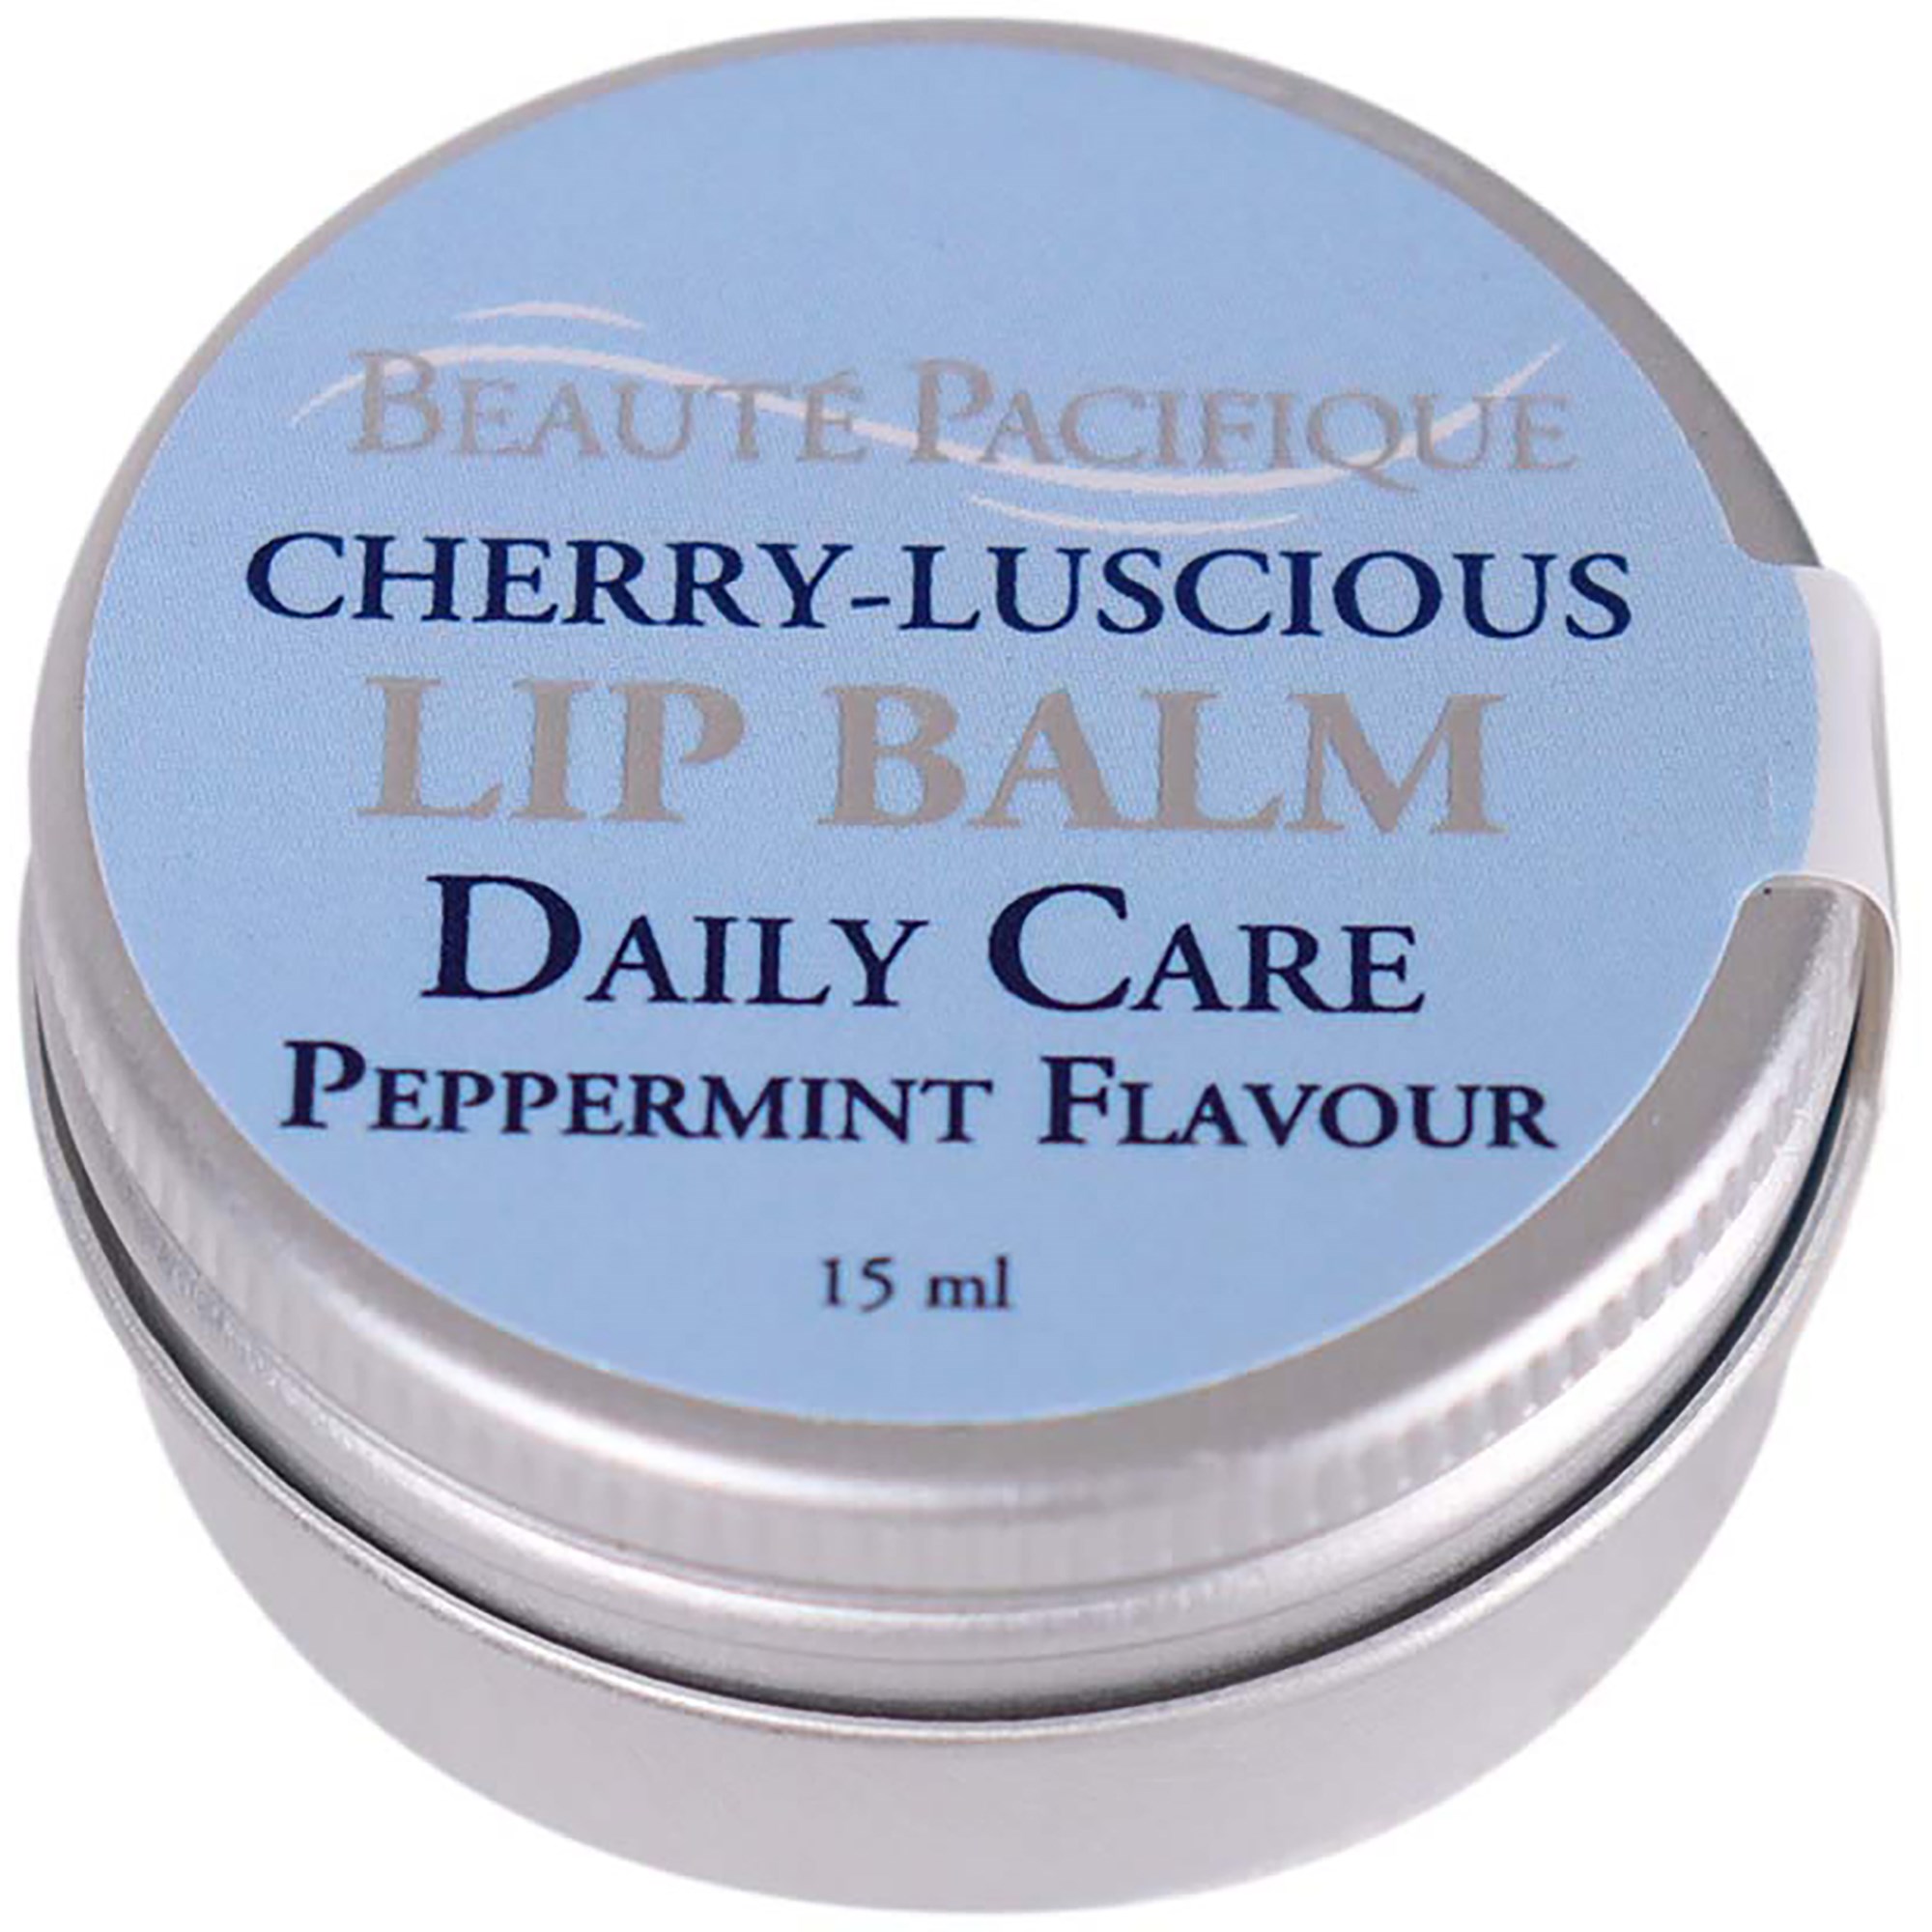 Фото - Крем і лосьйон Beauté Pacifique Cherry-Luscious Lip Balm  15 g(Peppermint)